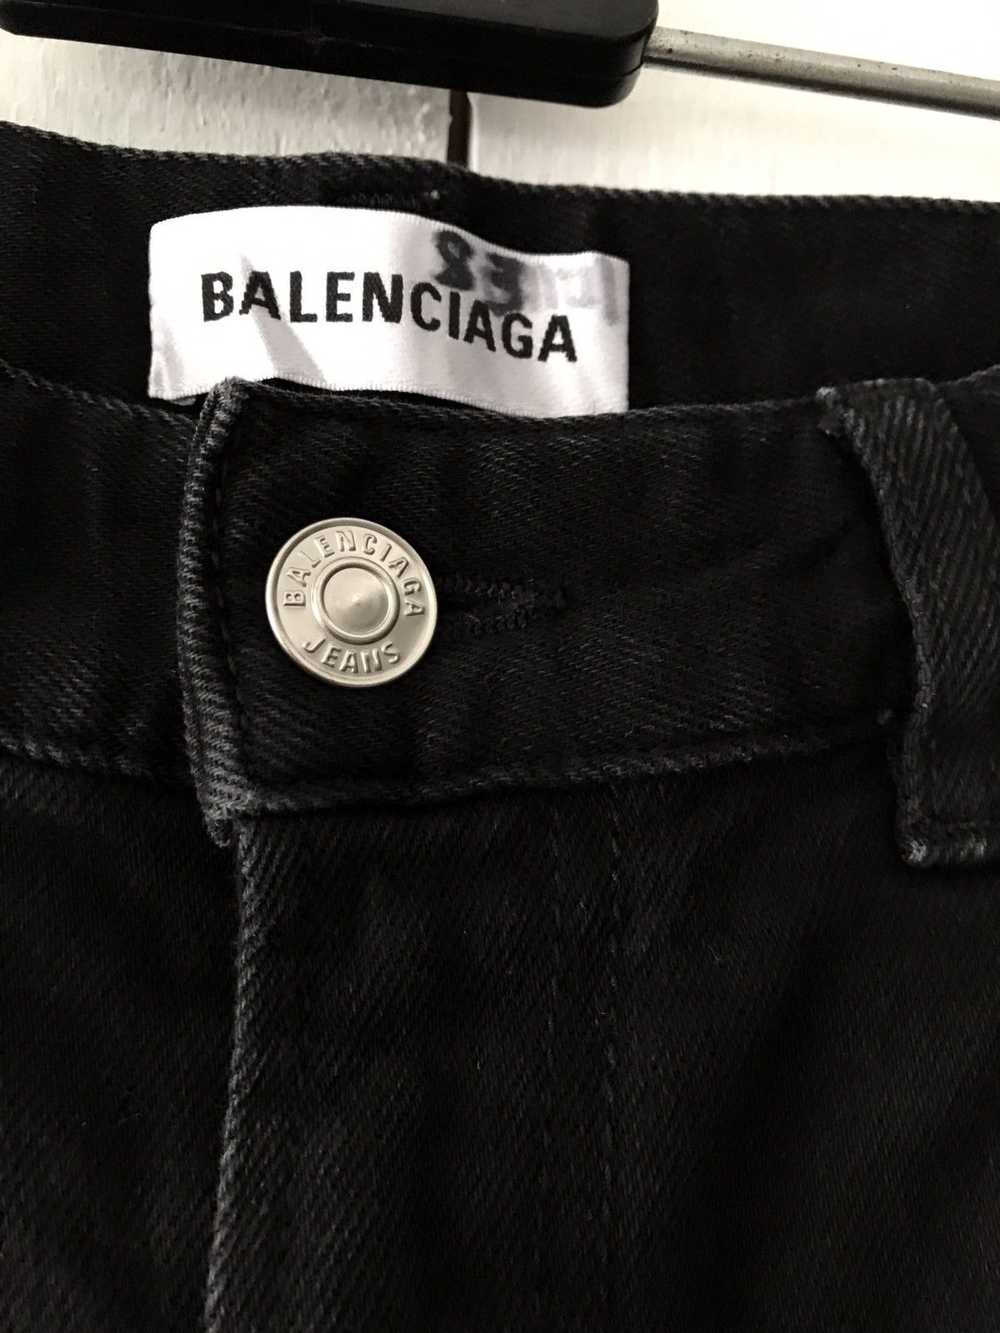 Balenciaga Balenciaga Jeans - image 4